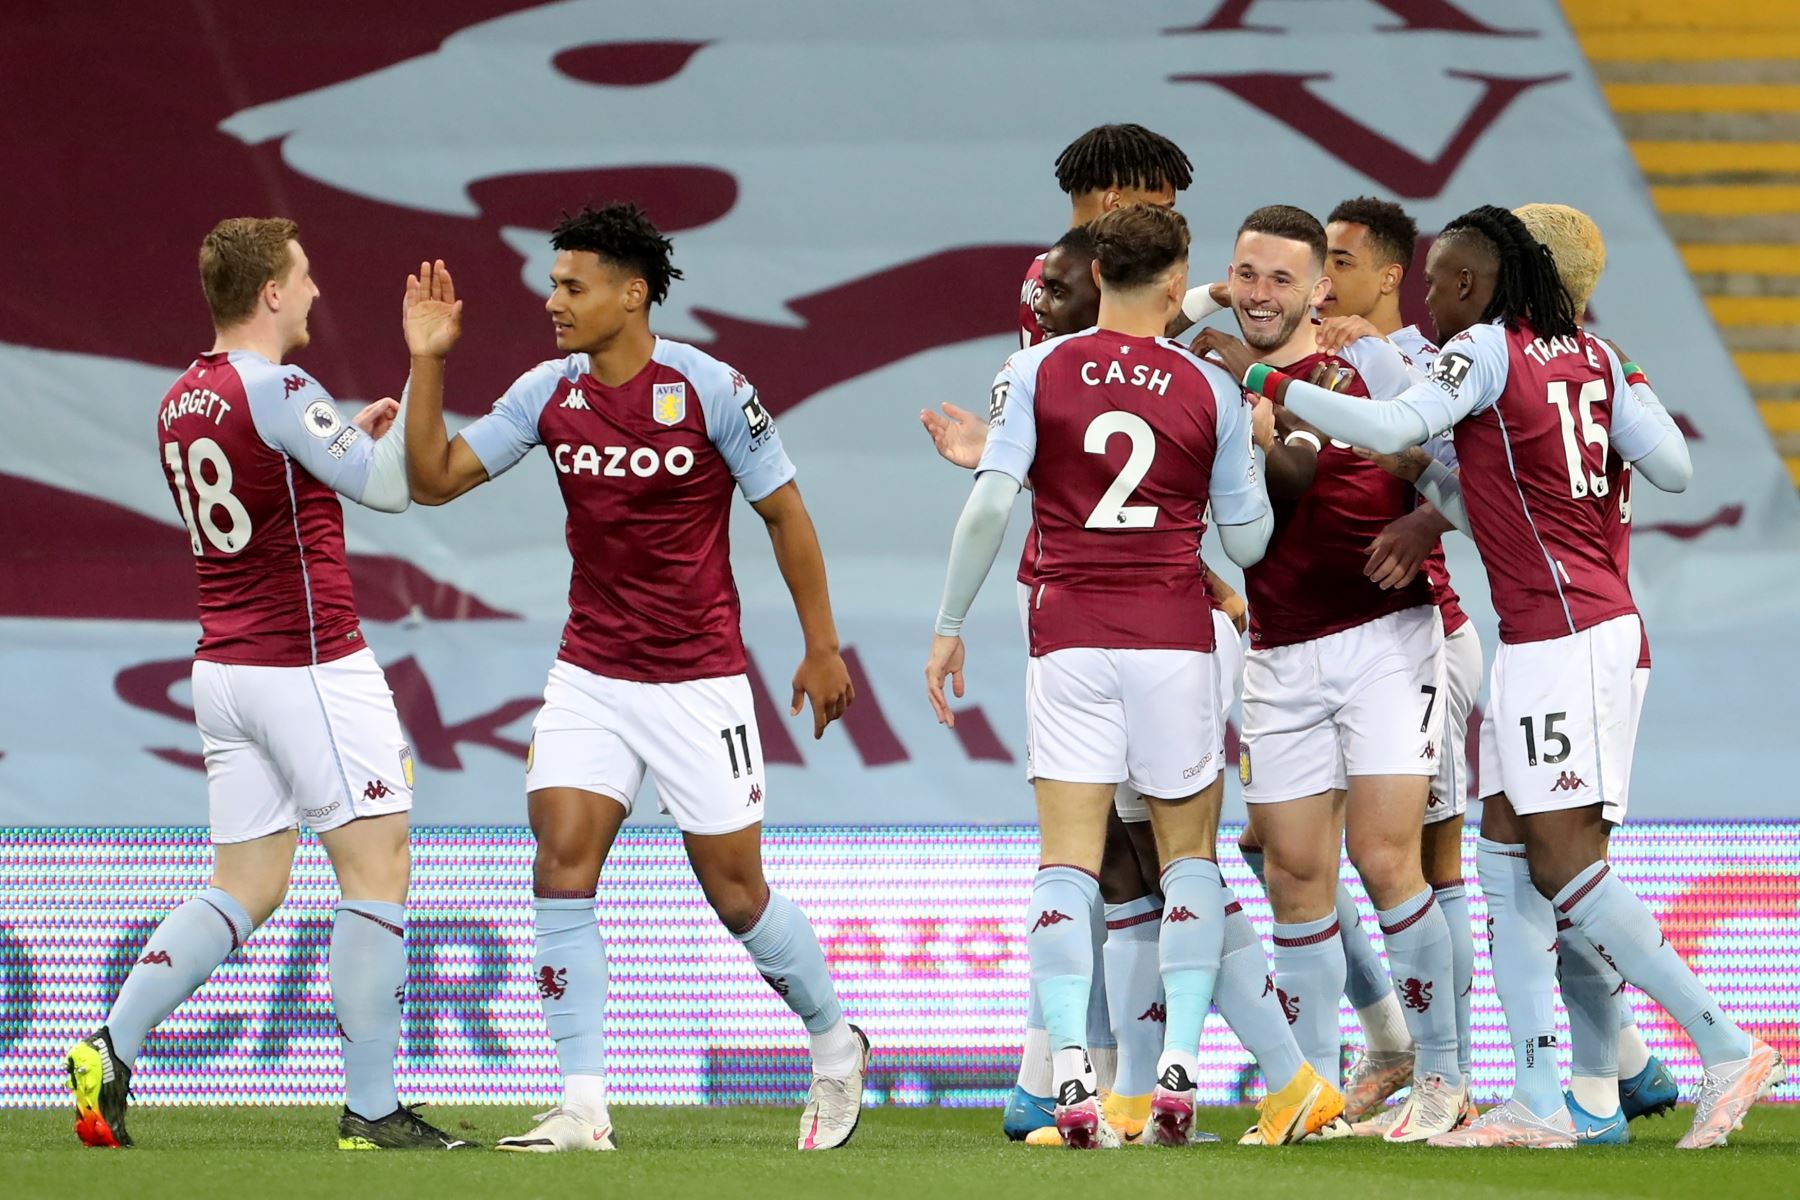 John McGinn de Aston Villa celebra junto a sus compañeros tras marcar el primer gol durante el partido de fútbol de la Premier League. Foto: EFE